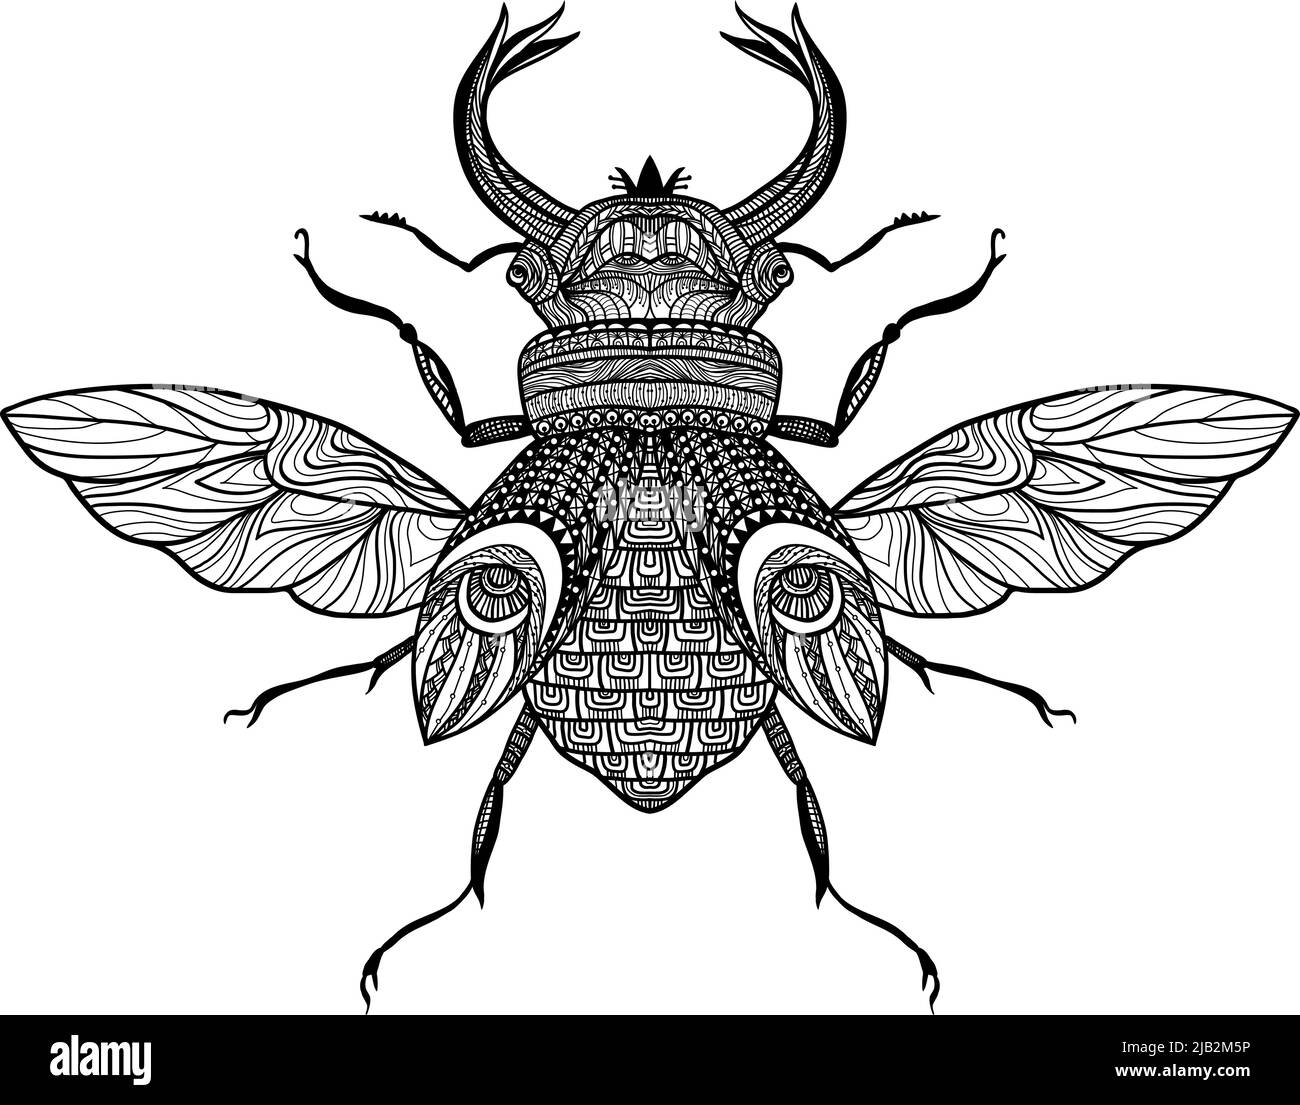 Dessinez un insecte décoratif avec une illustration vectorielle noire représentant un ornement dessiné à la main Illustration de Vecteur